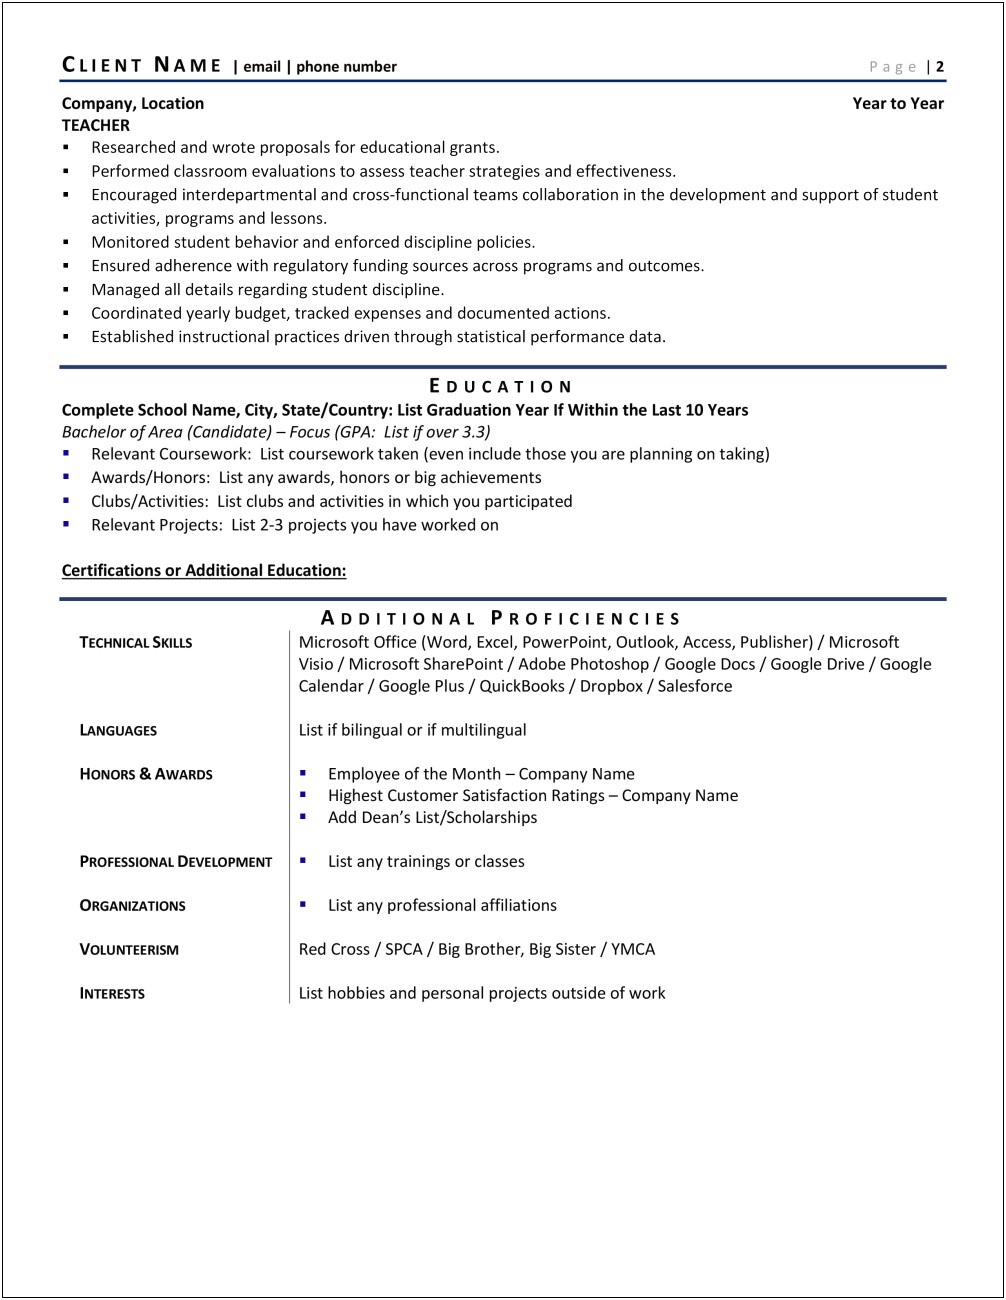 Resume Writing For Principal Jobs